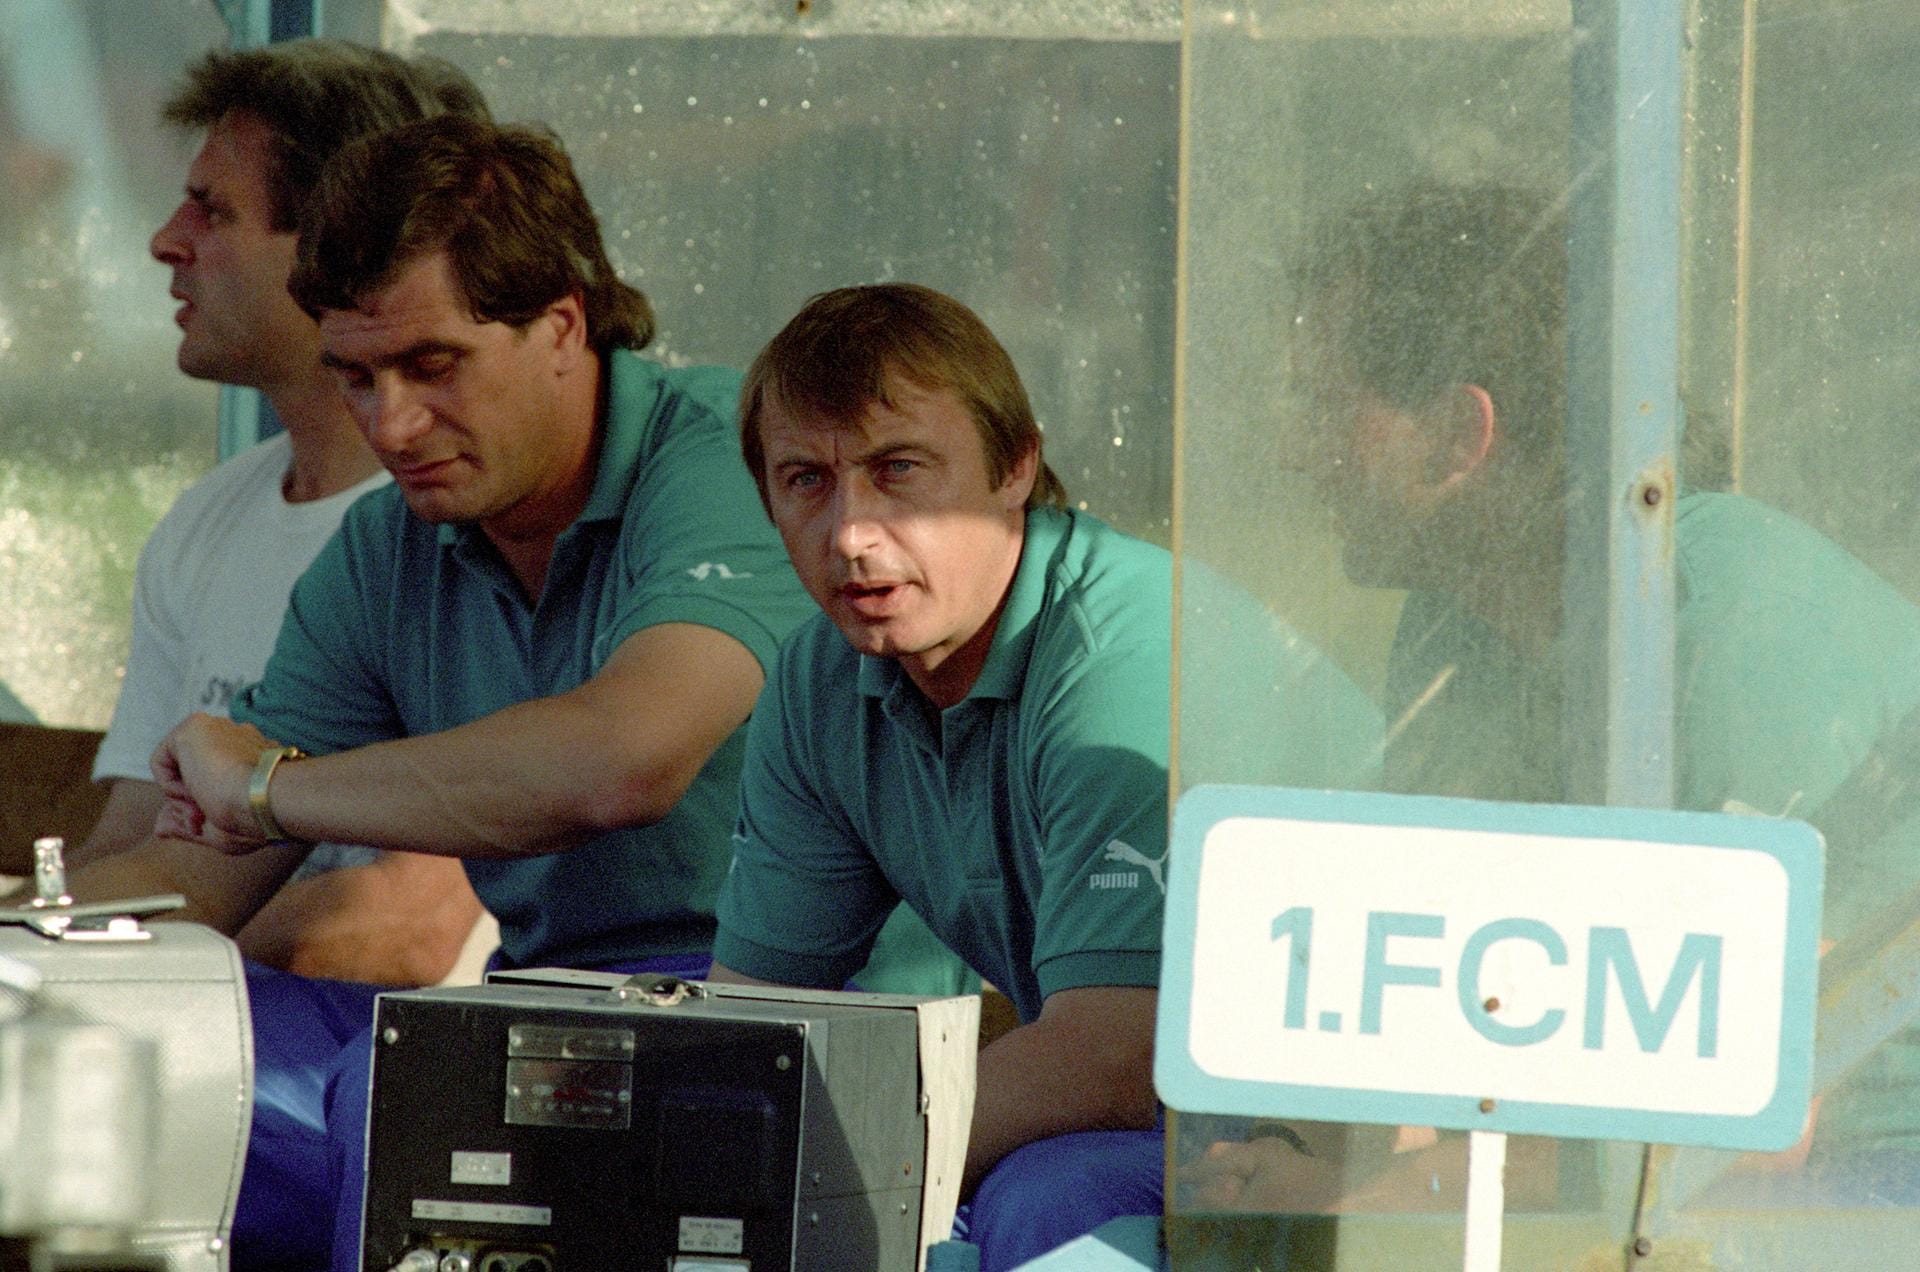 Nach seiner aktiven Karriere wurde Joachim Streich Trainer beim 1. FC Magdeburg, coachte diesen erstmals von 1985 bis 1990. Im Jahr 1991 kehrte er noch einmal für ein paar Monate zurück an die Seitenlinie des 1. FCM.